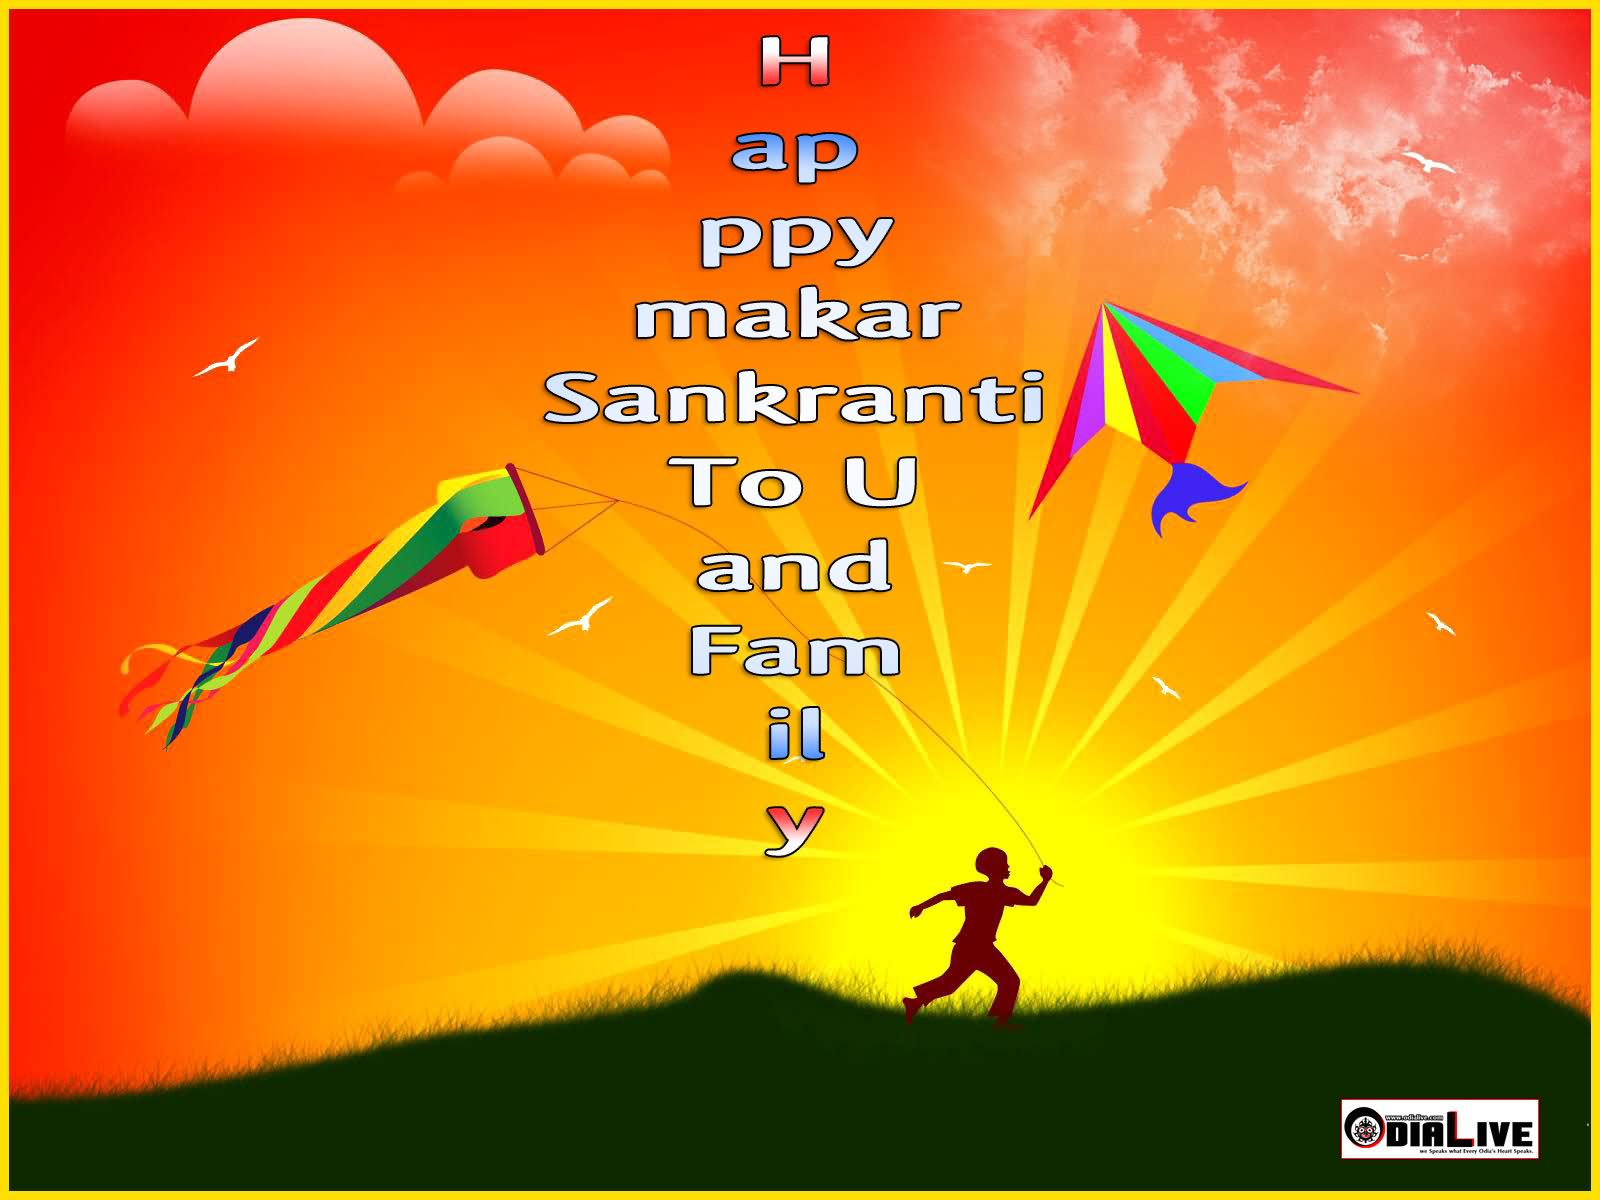 Happy Makar Sankranti To You And Family